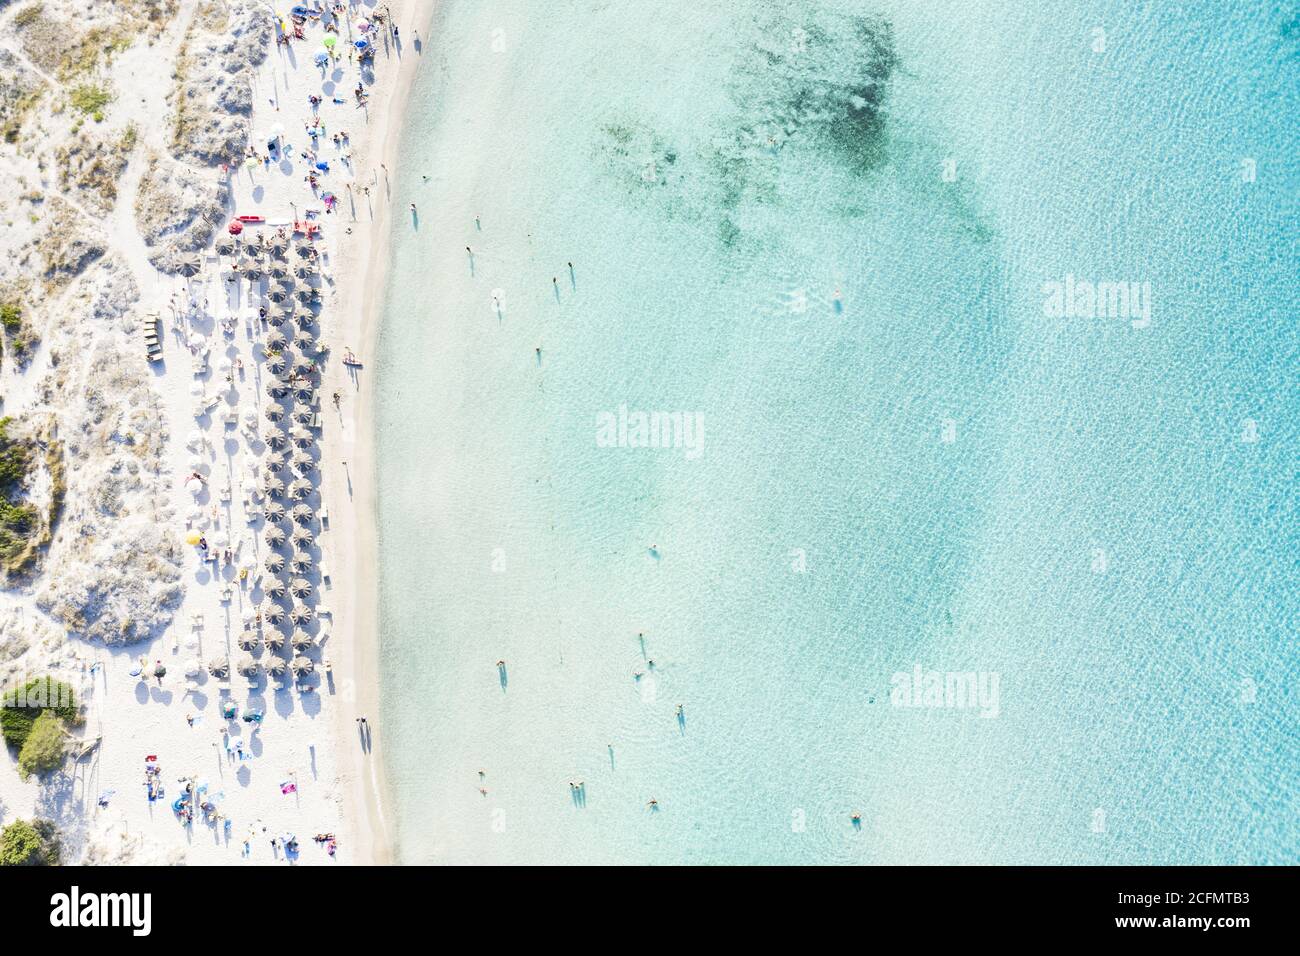 Vista dall'alto, splendida vista aerea della spiaggia di Grande Pevero con  ombrelloni e persone che nuotano in acque turchesi e limpide. Sardegna,  Italia Foto stock - Alamy